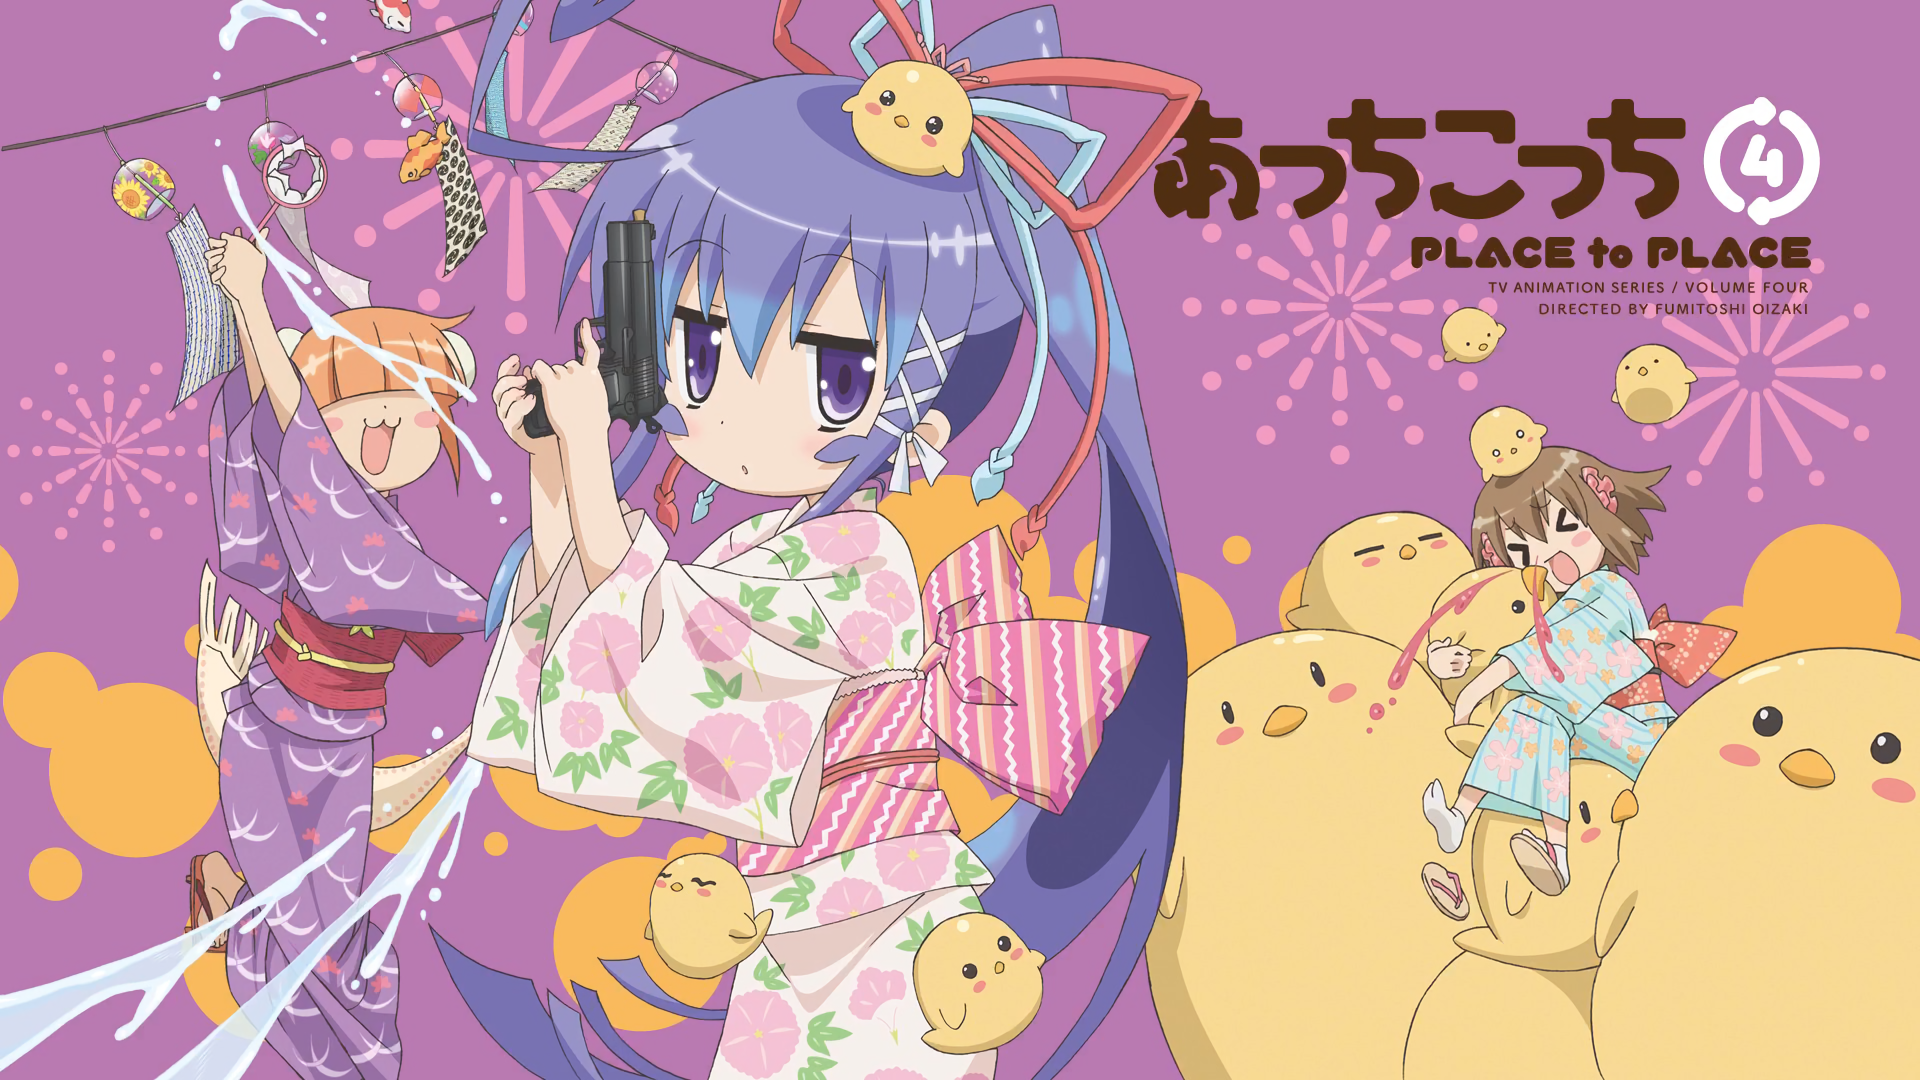 Tsumiki Miniwa HD Wallpaper Background Image